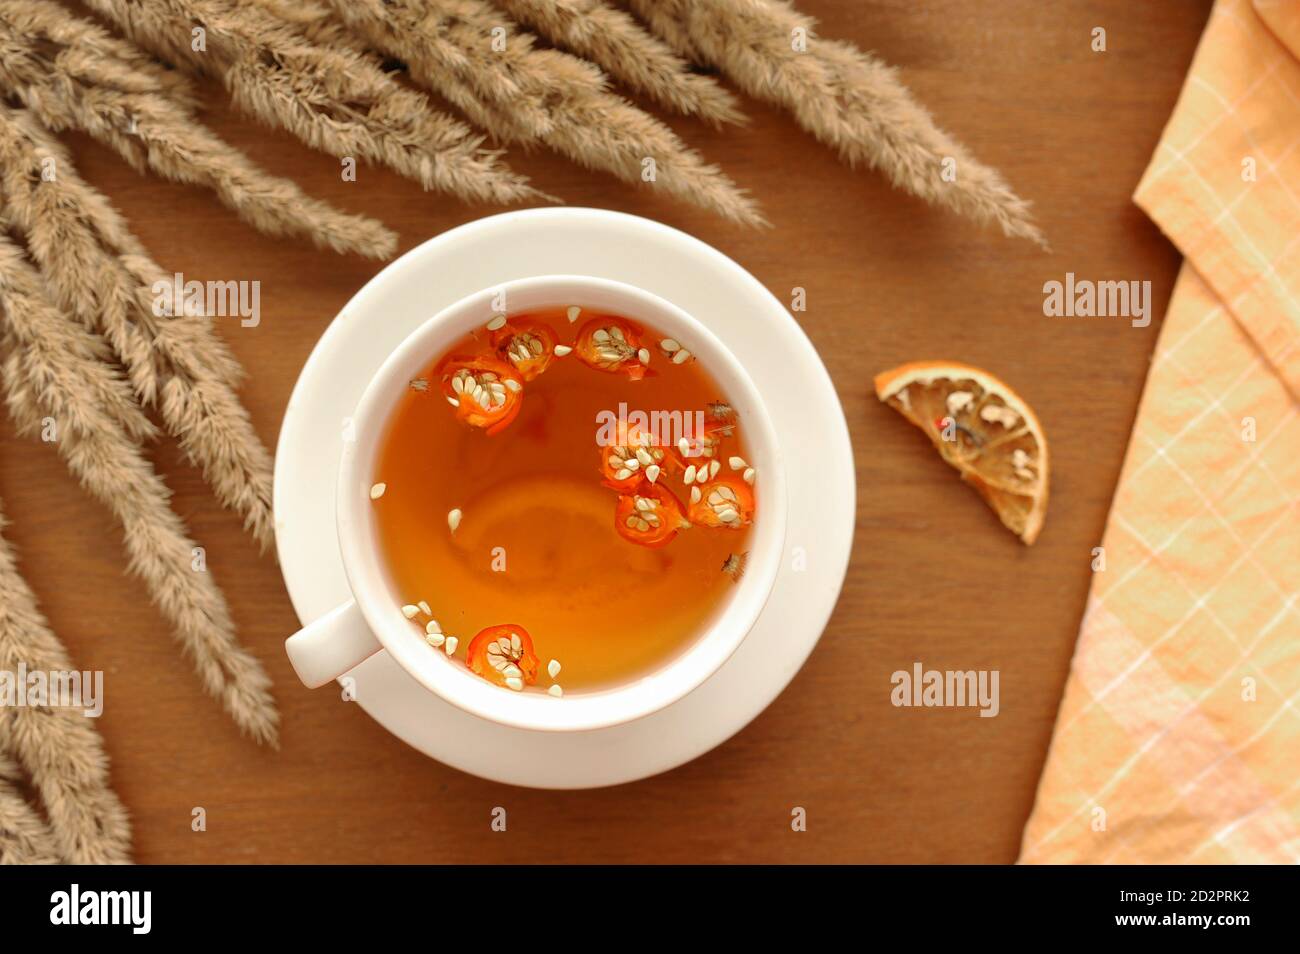 Gemütliches Herbstfrühstück mit nützlichem Tee, Honig, Zimt-Sticks, Zitrone, Dogrosenbeeren und Bouquet von getrockneten Blumen und Baumwolle orange Serviette für servin Stockfoto